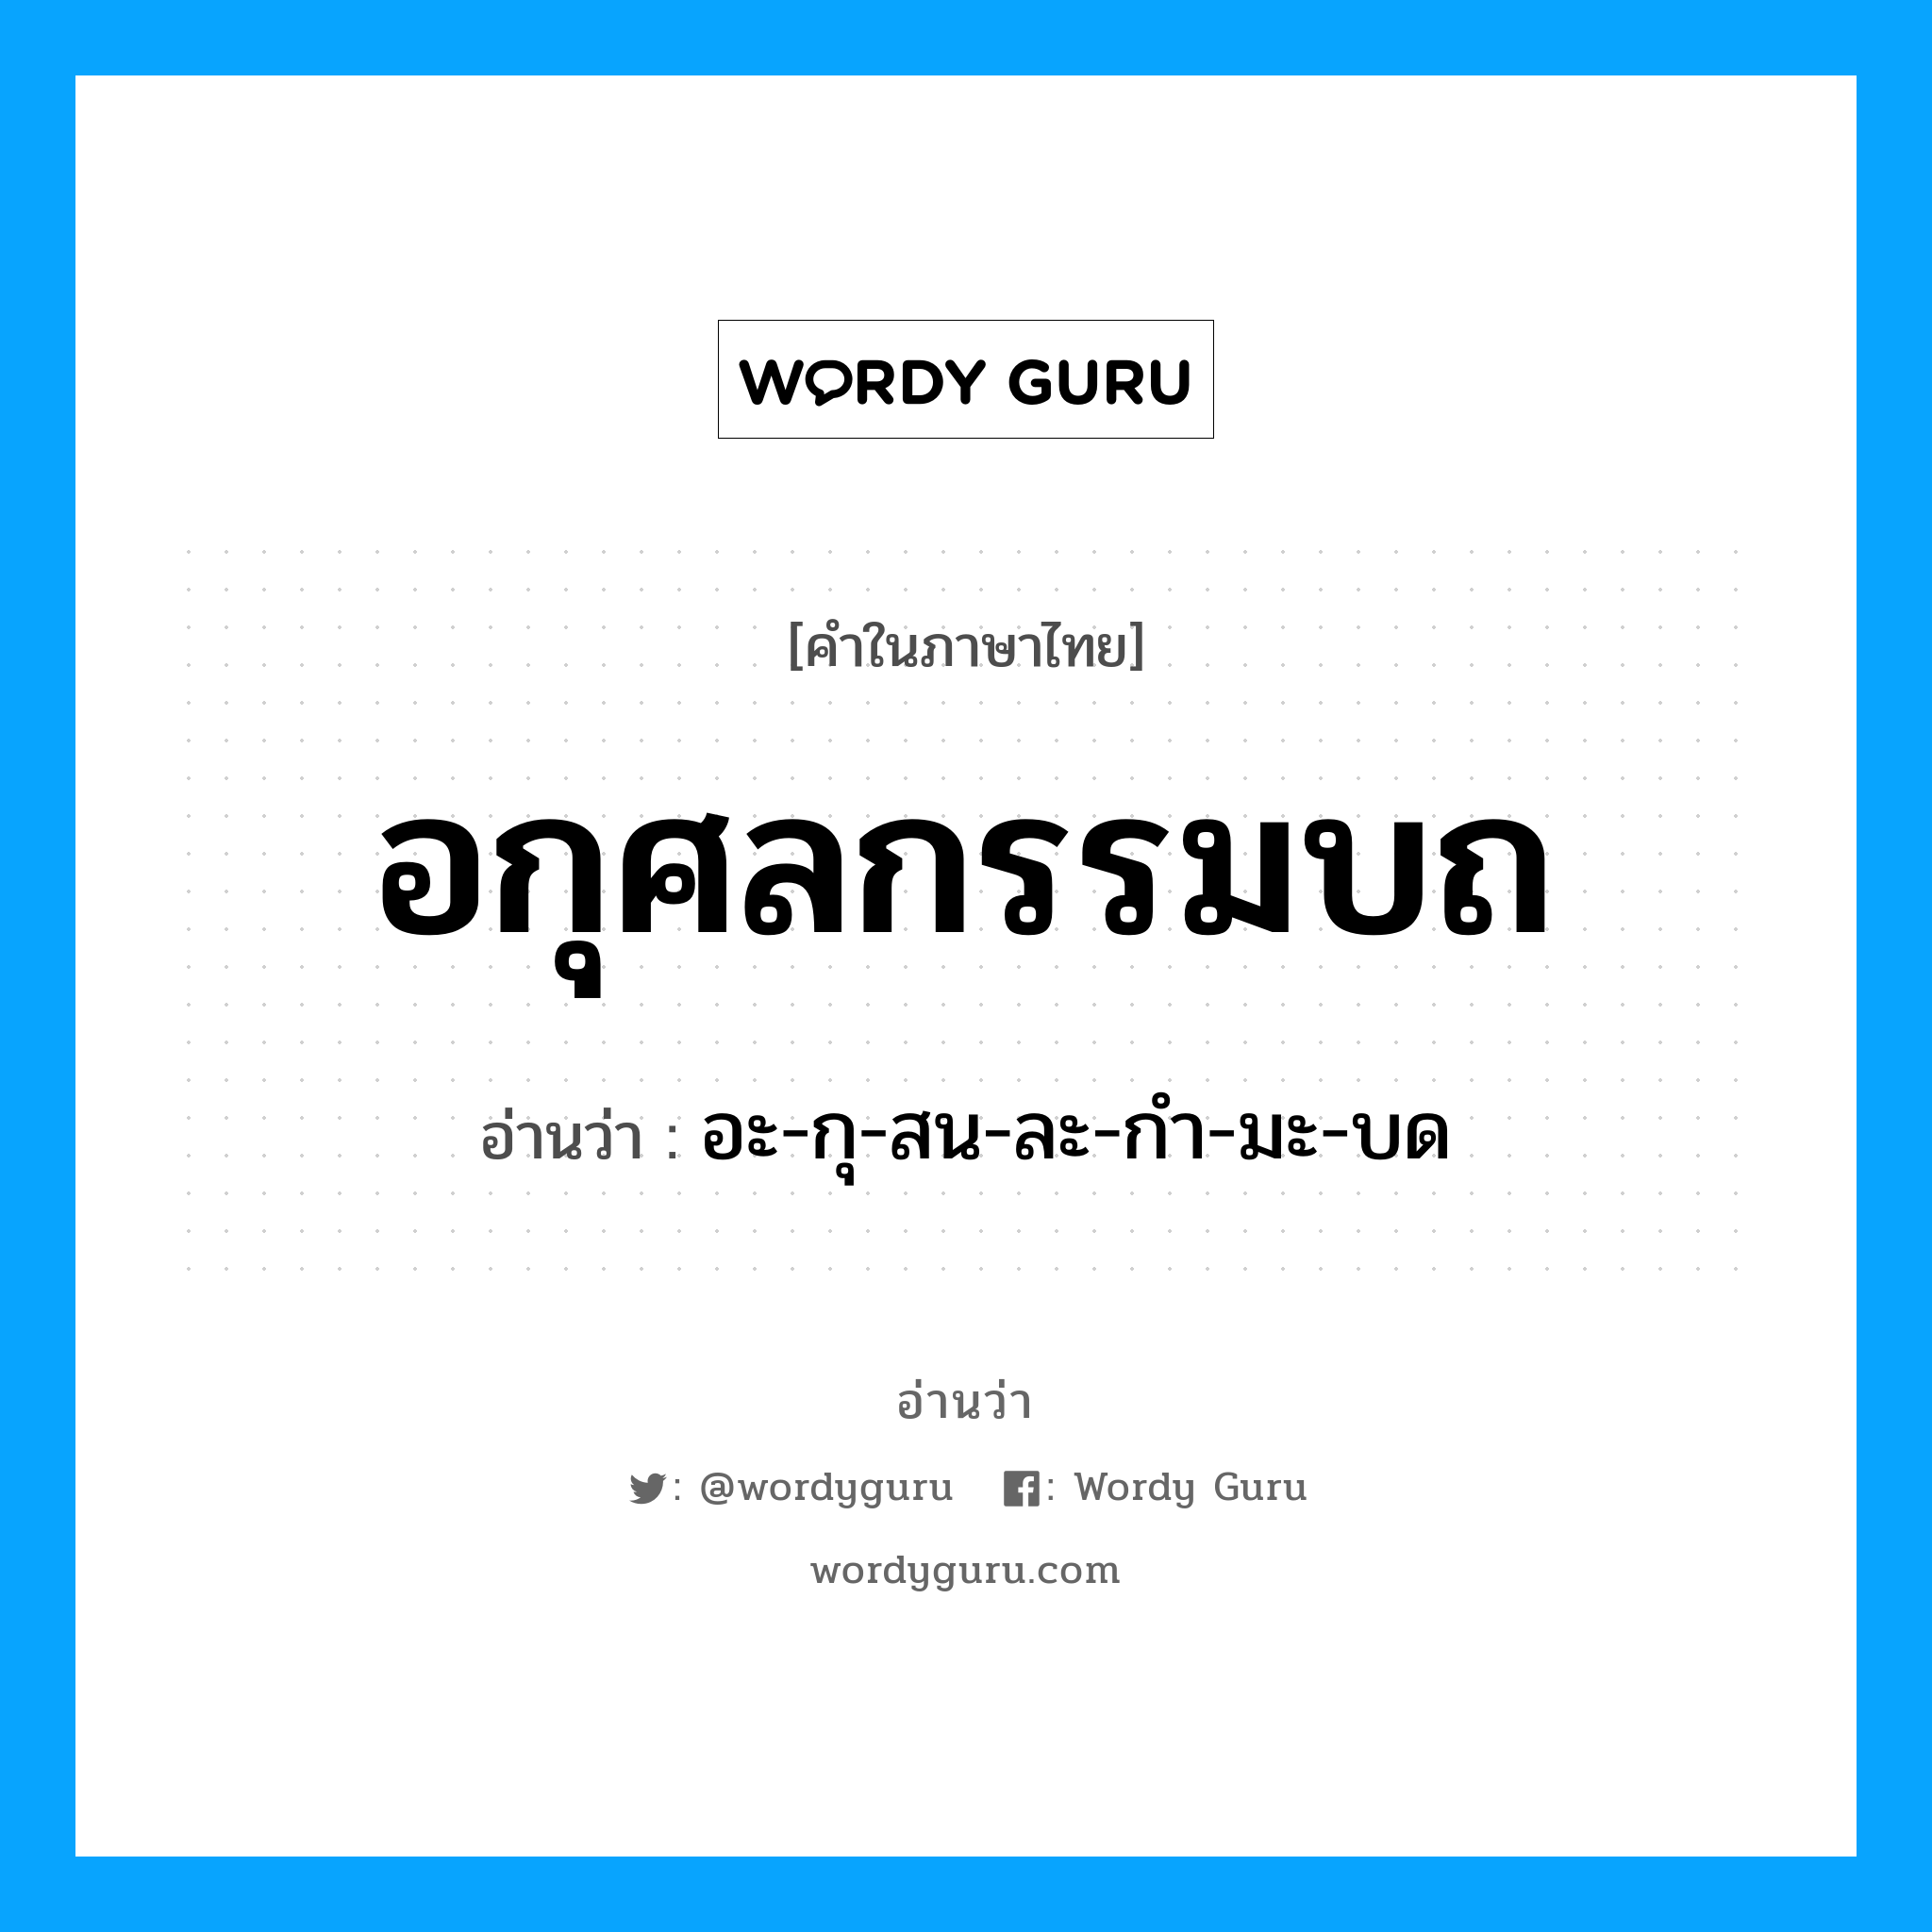 อะ-กุ-สน-ละ-กำ-มะ-บด เป็นคำอ่านของคำไหน?, คำในภาษาไทย อะ-กุ-สน-ละ-กำ-มะ-บด อ่านว่า อกุศลกรรมบถ